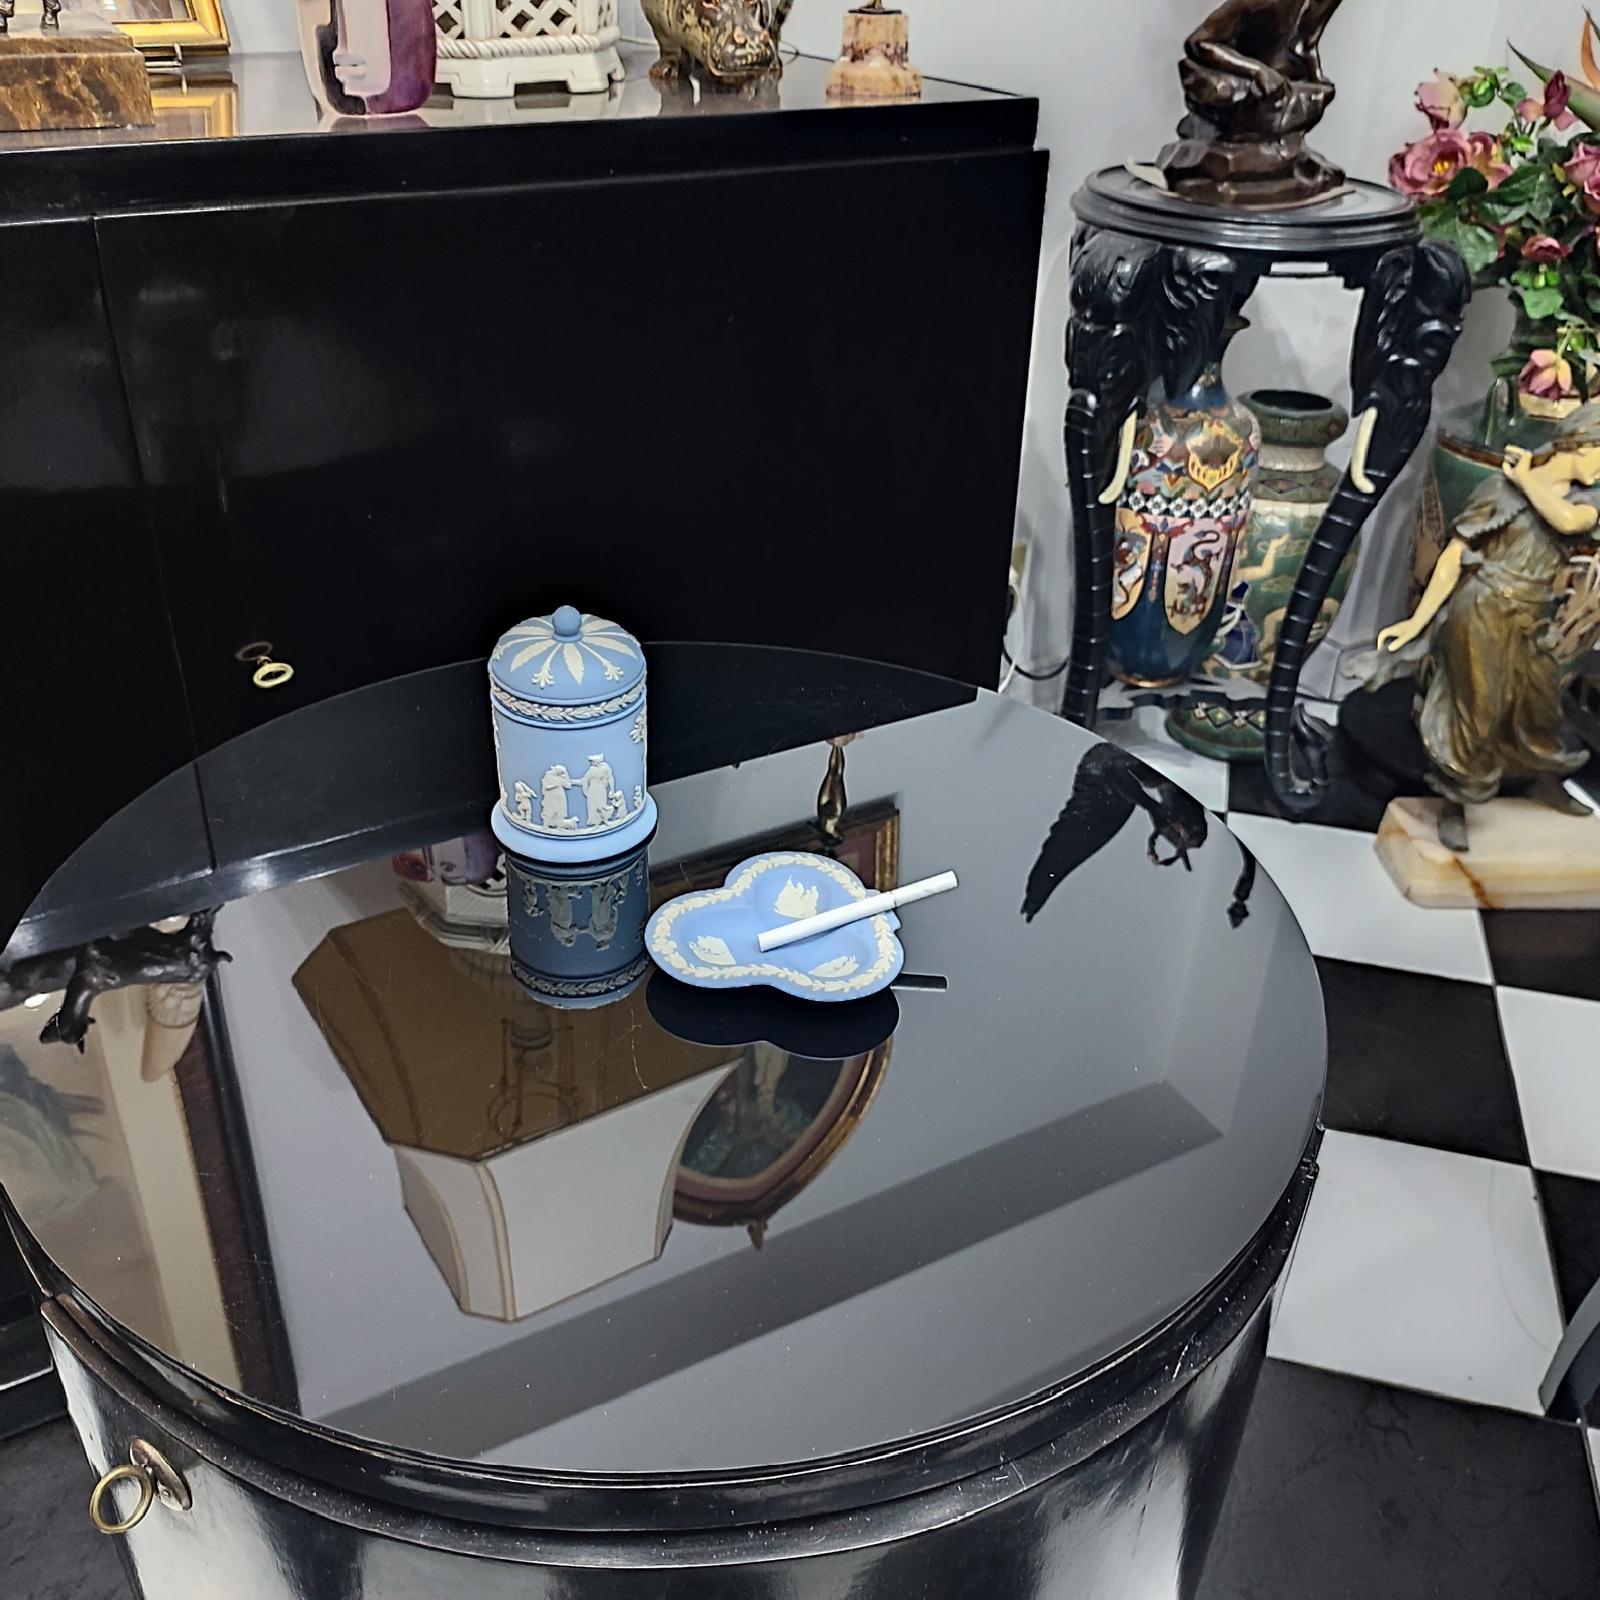 Ein schönes Raucher-Set von Wedgwood Jasperware Pale Blue zwei Stücke, bestehend aus einem runden Deckel-Box, und ein Aschenbecher. Hergestellt von Wedgwood in England in den 1980er Jahren, markiert/gestempelt auf dem Boden.
Abmessungen:
Kasten H 13